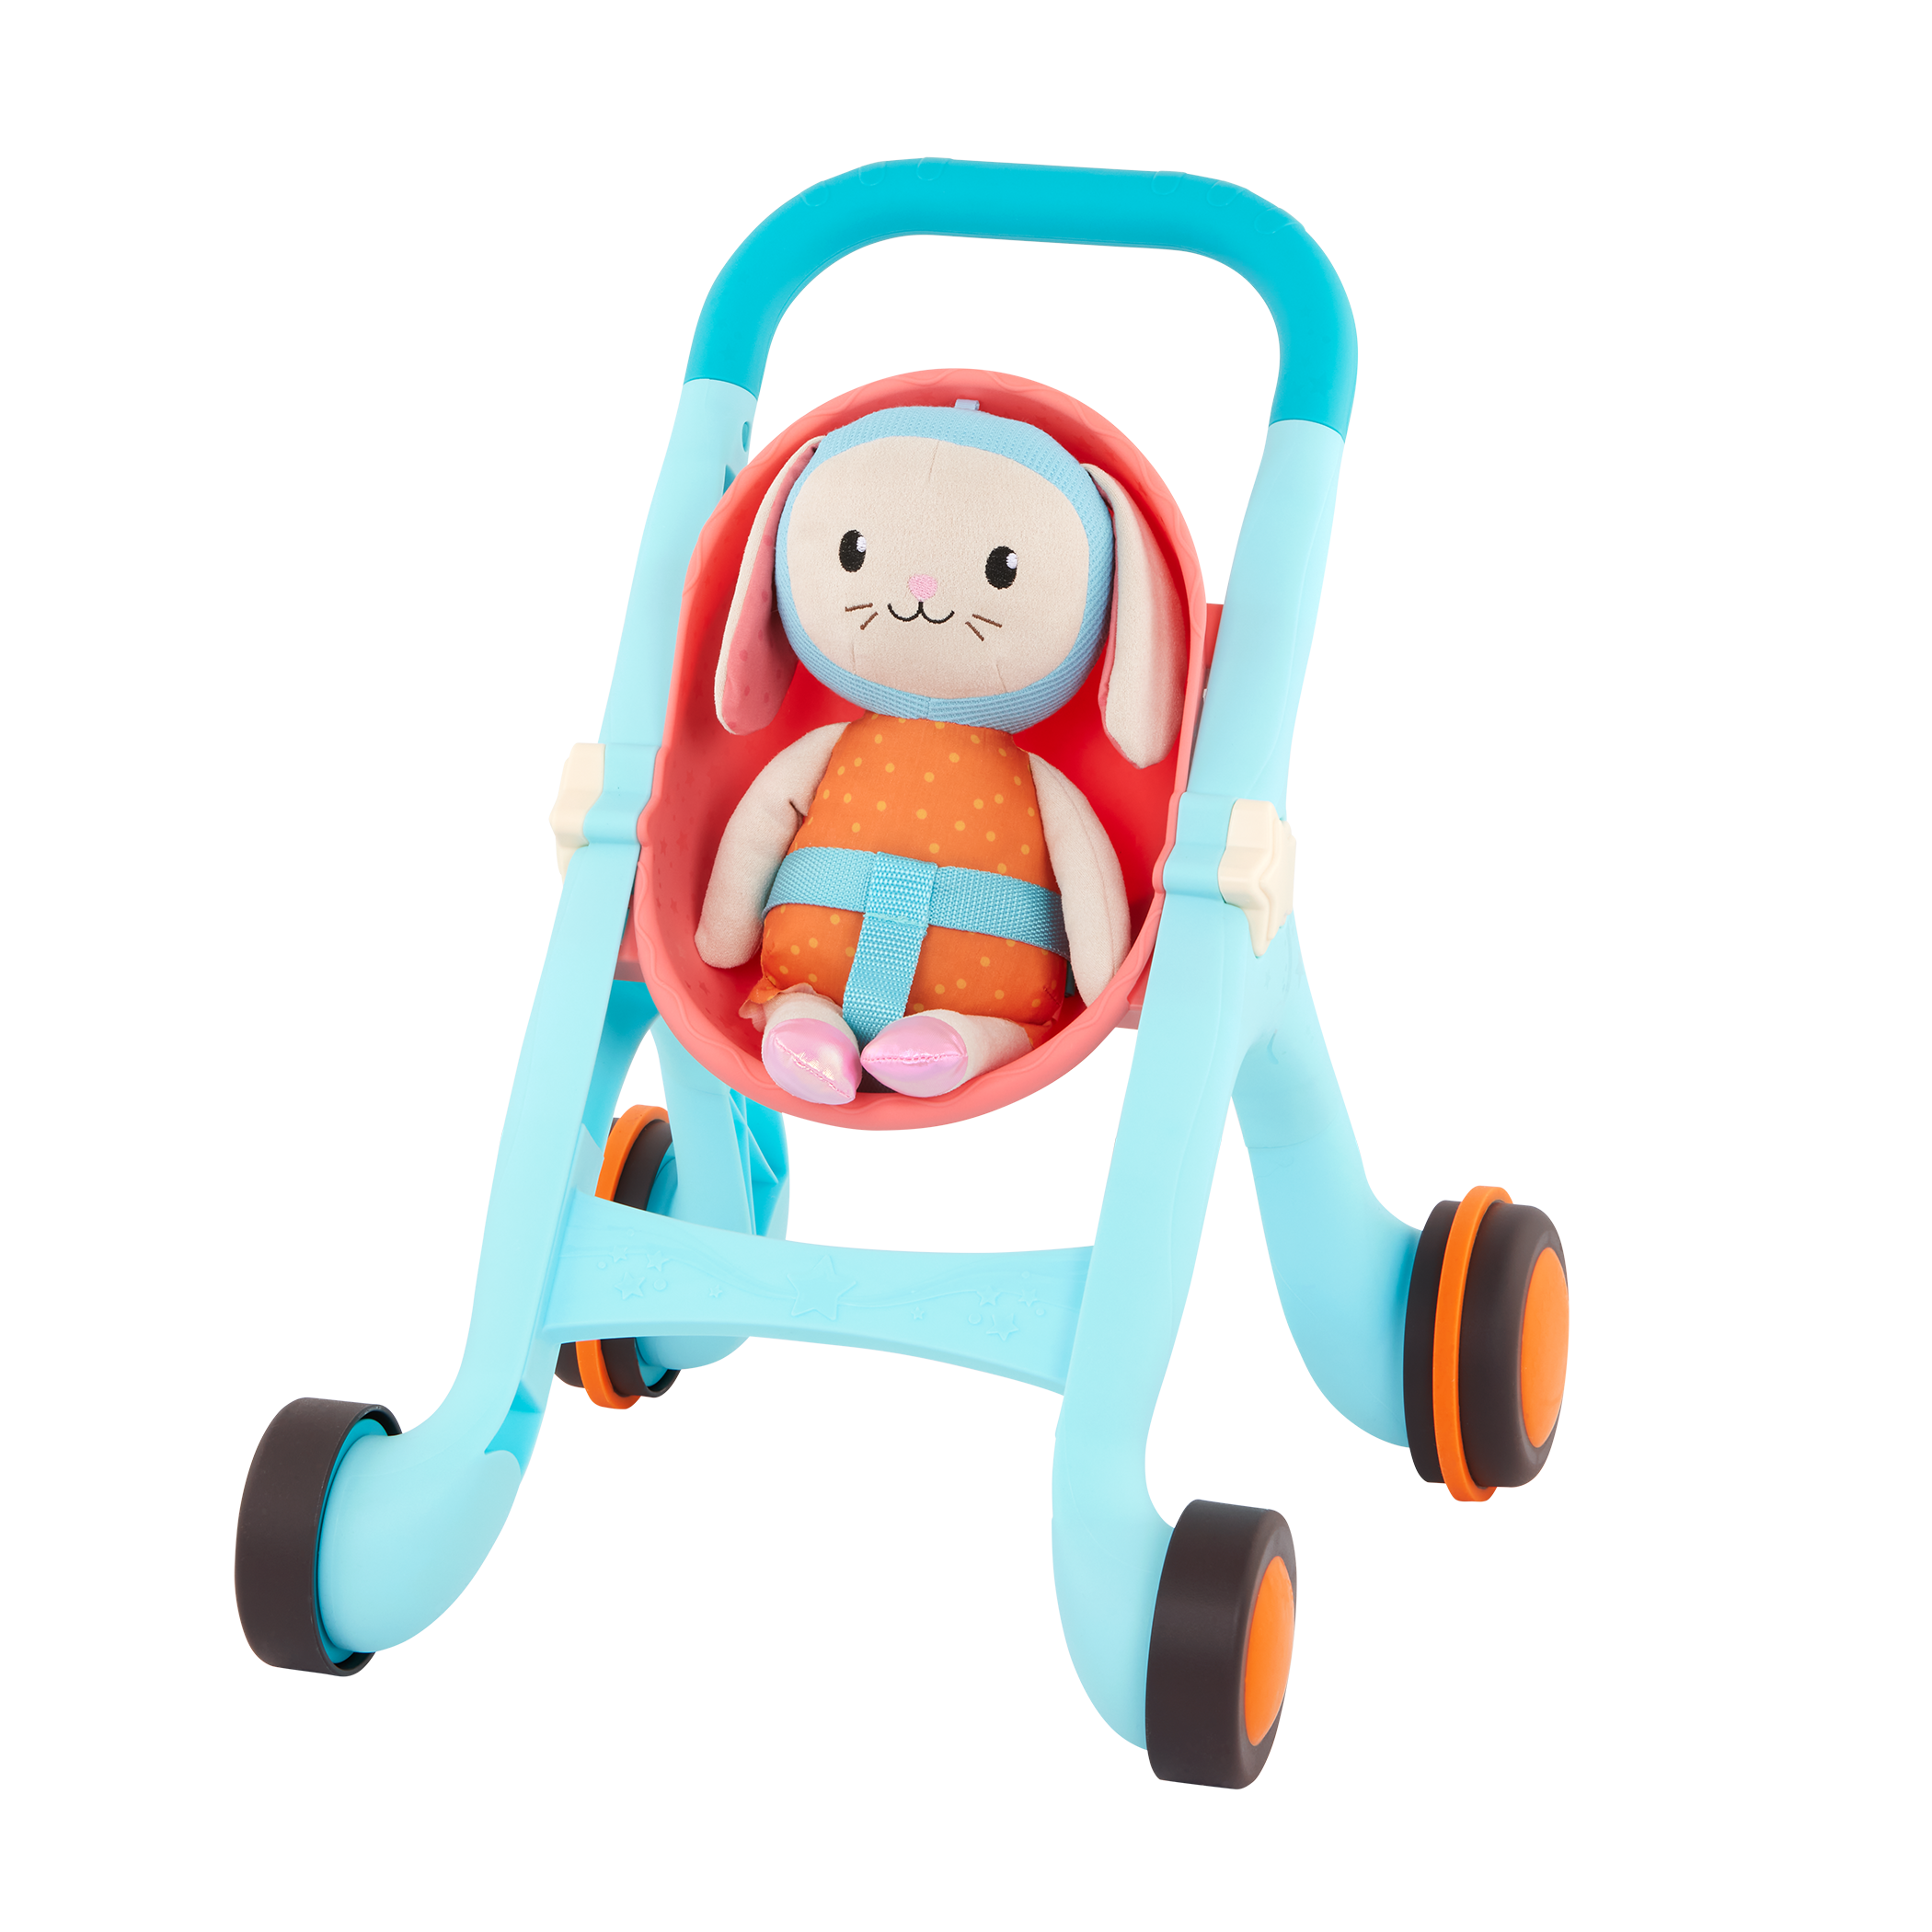 Happy Strolling | Toy Stroller & Plush Bunny | B. play – B. toys 